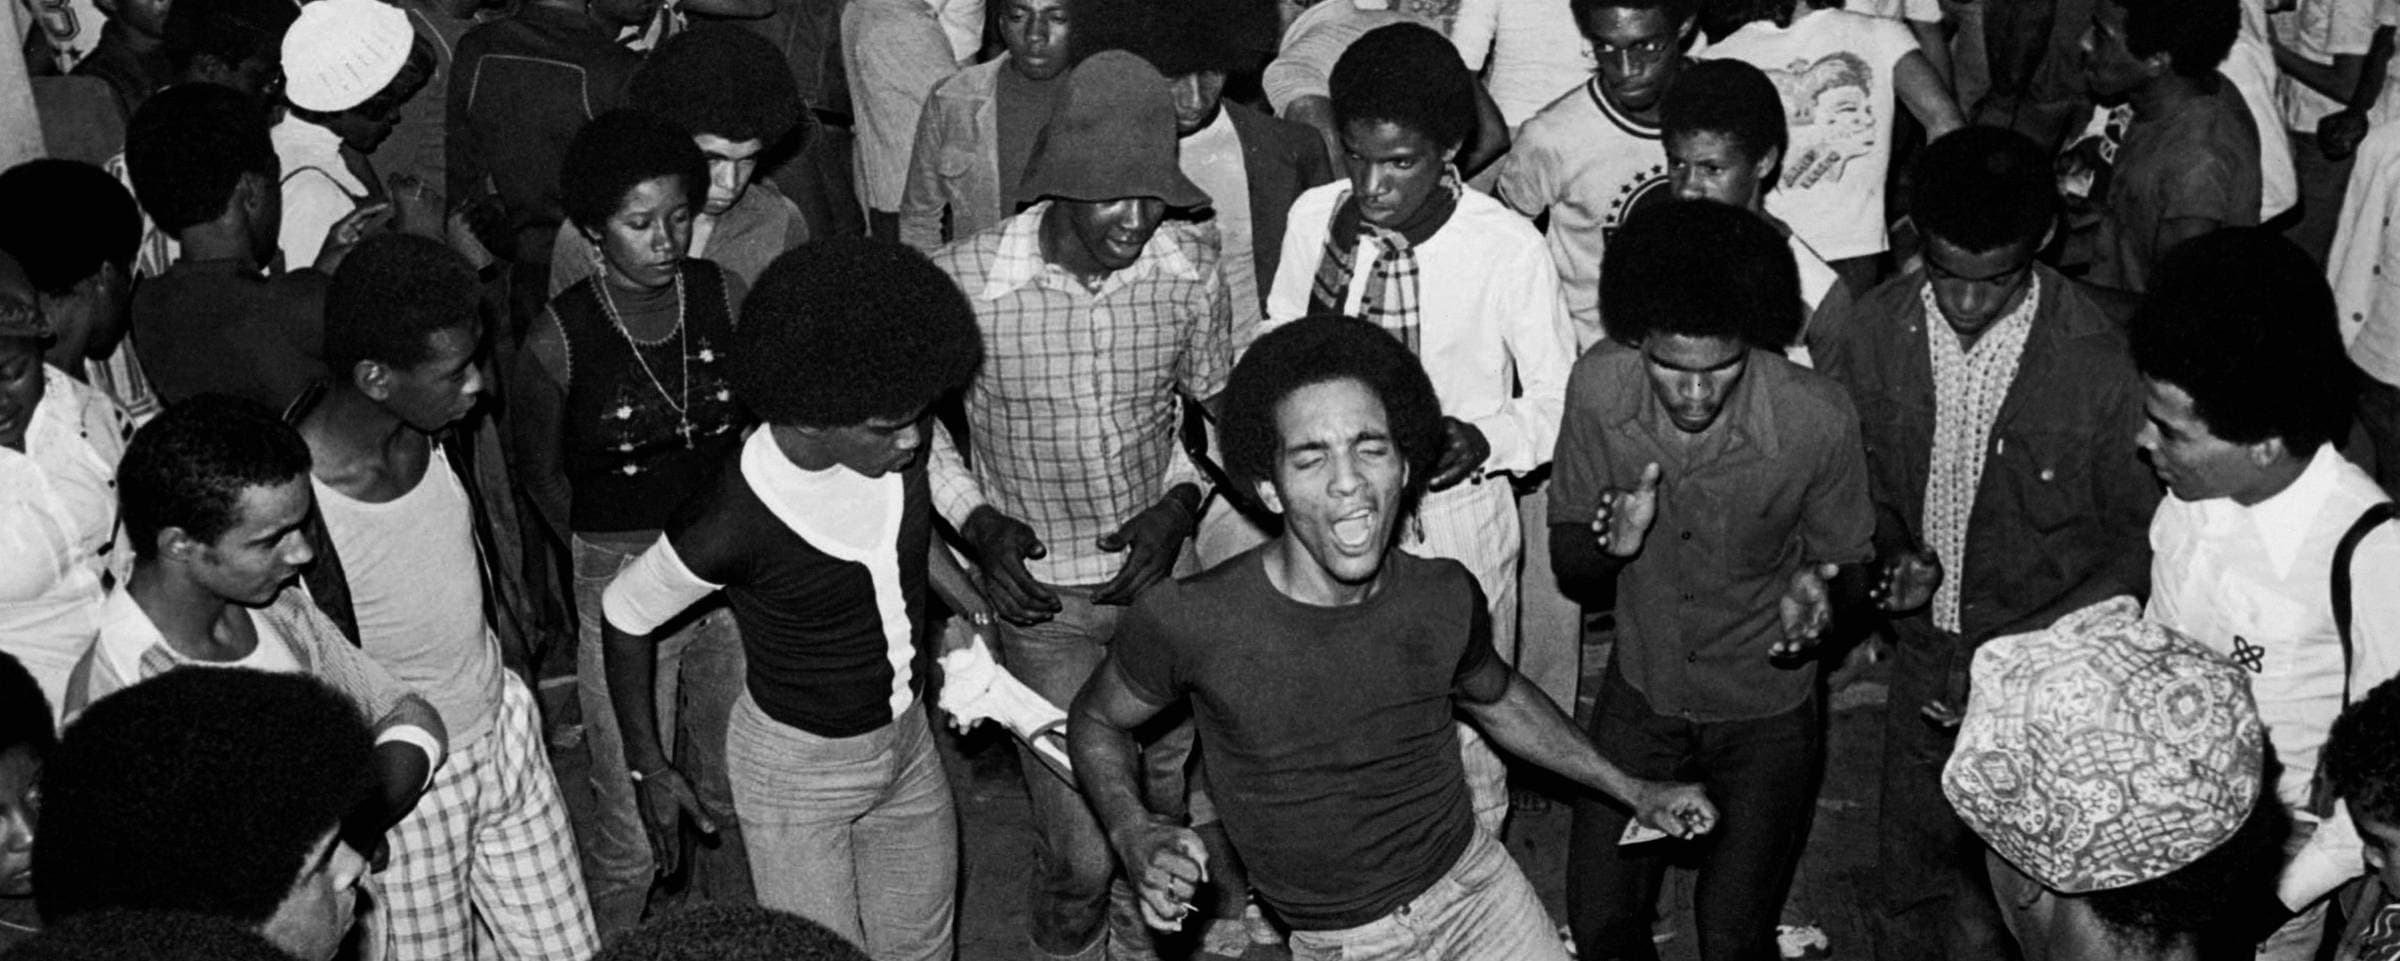 Como Gerson King Combo e seus bailes black tentaram implodir a democracia racial